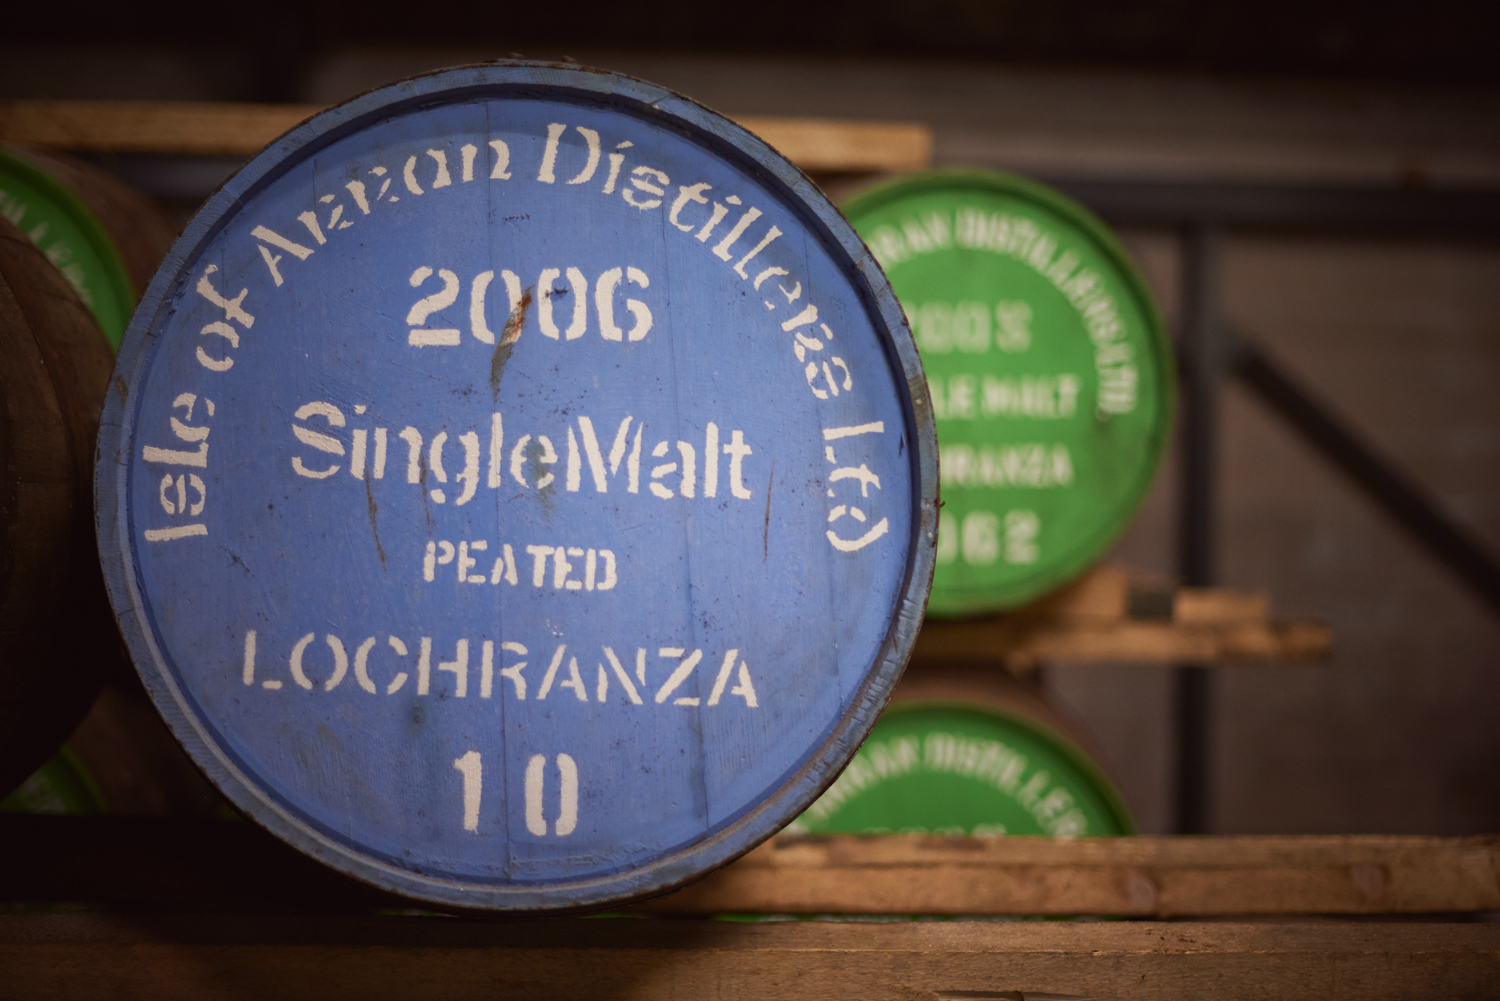 Whisky barrels close up